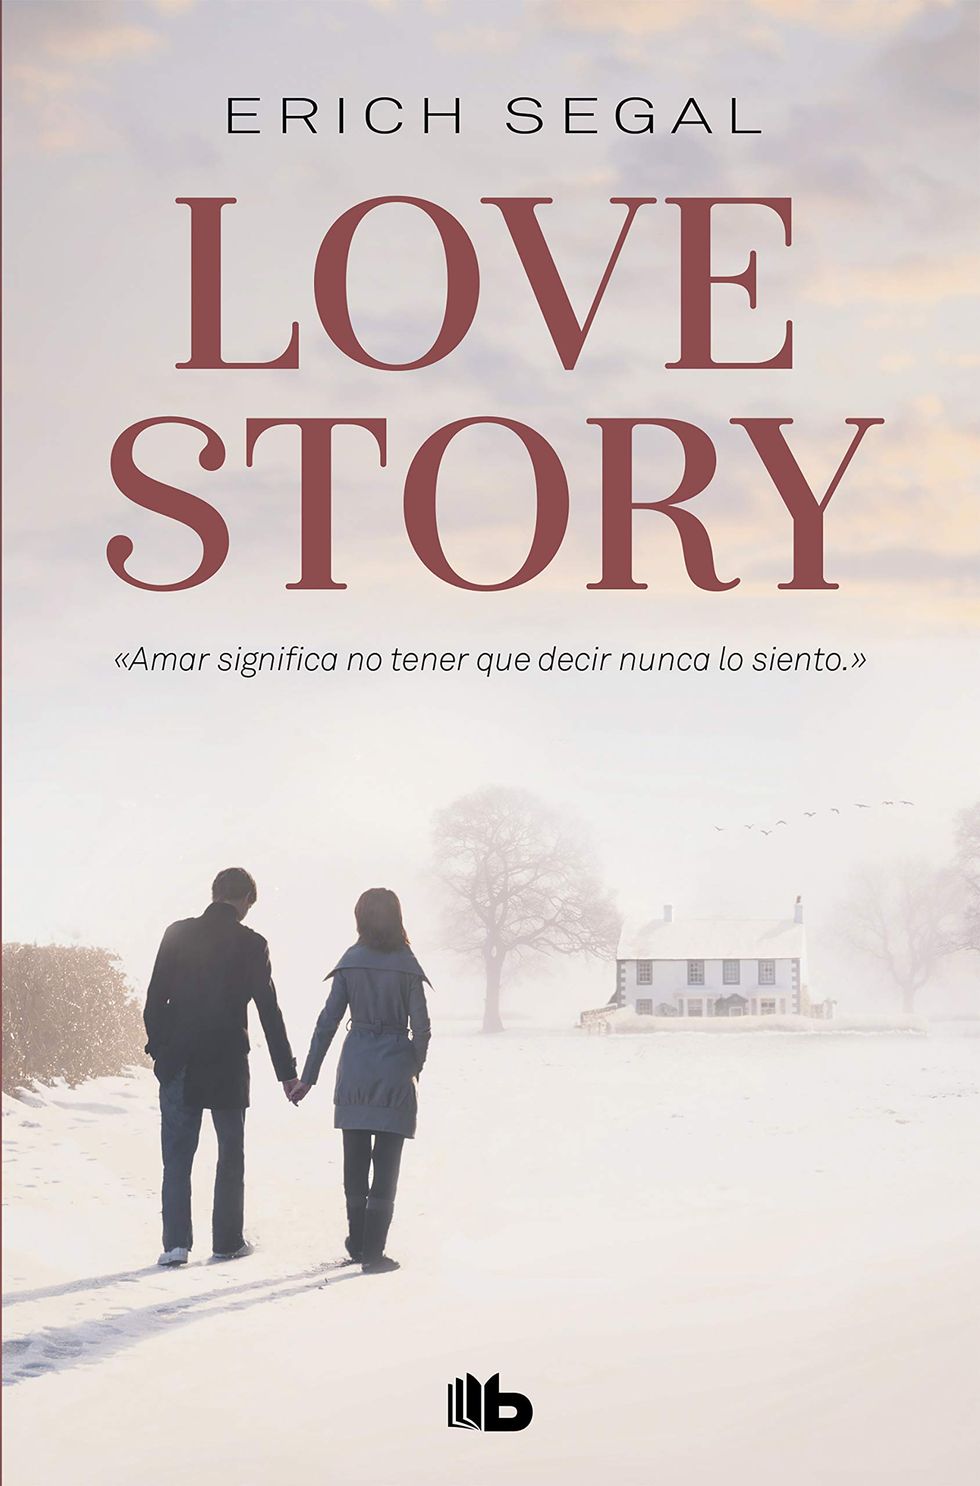 Книга лов. Segal Erich "Love story". Love story книга. Love story by Erich Segal. Обложка книги история любви.